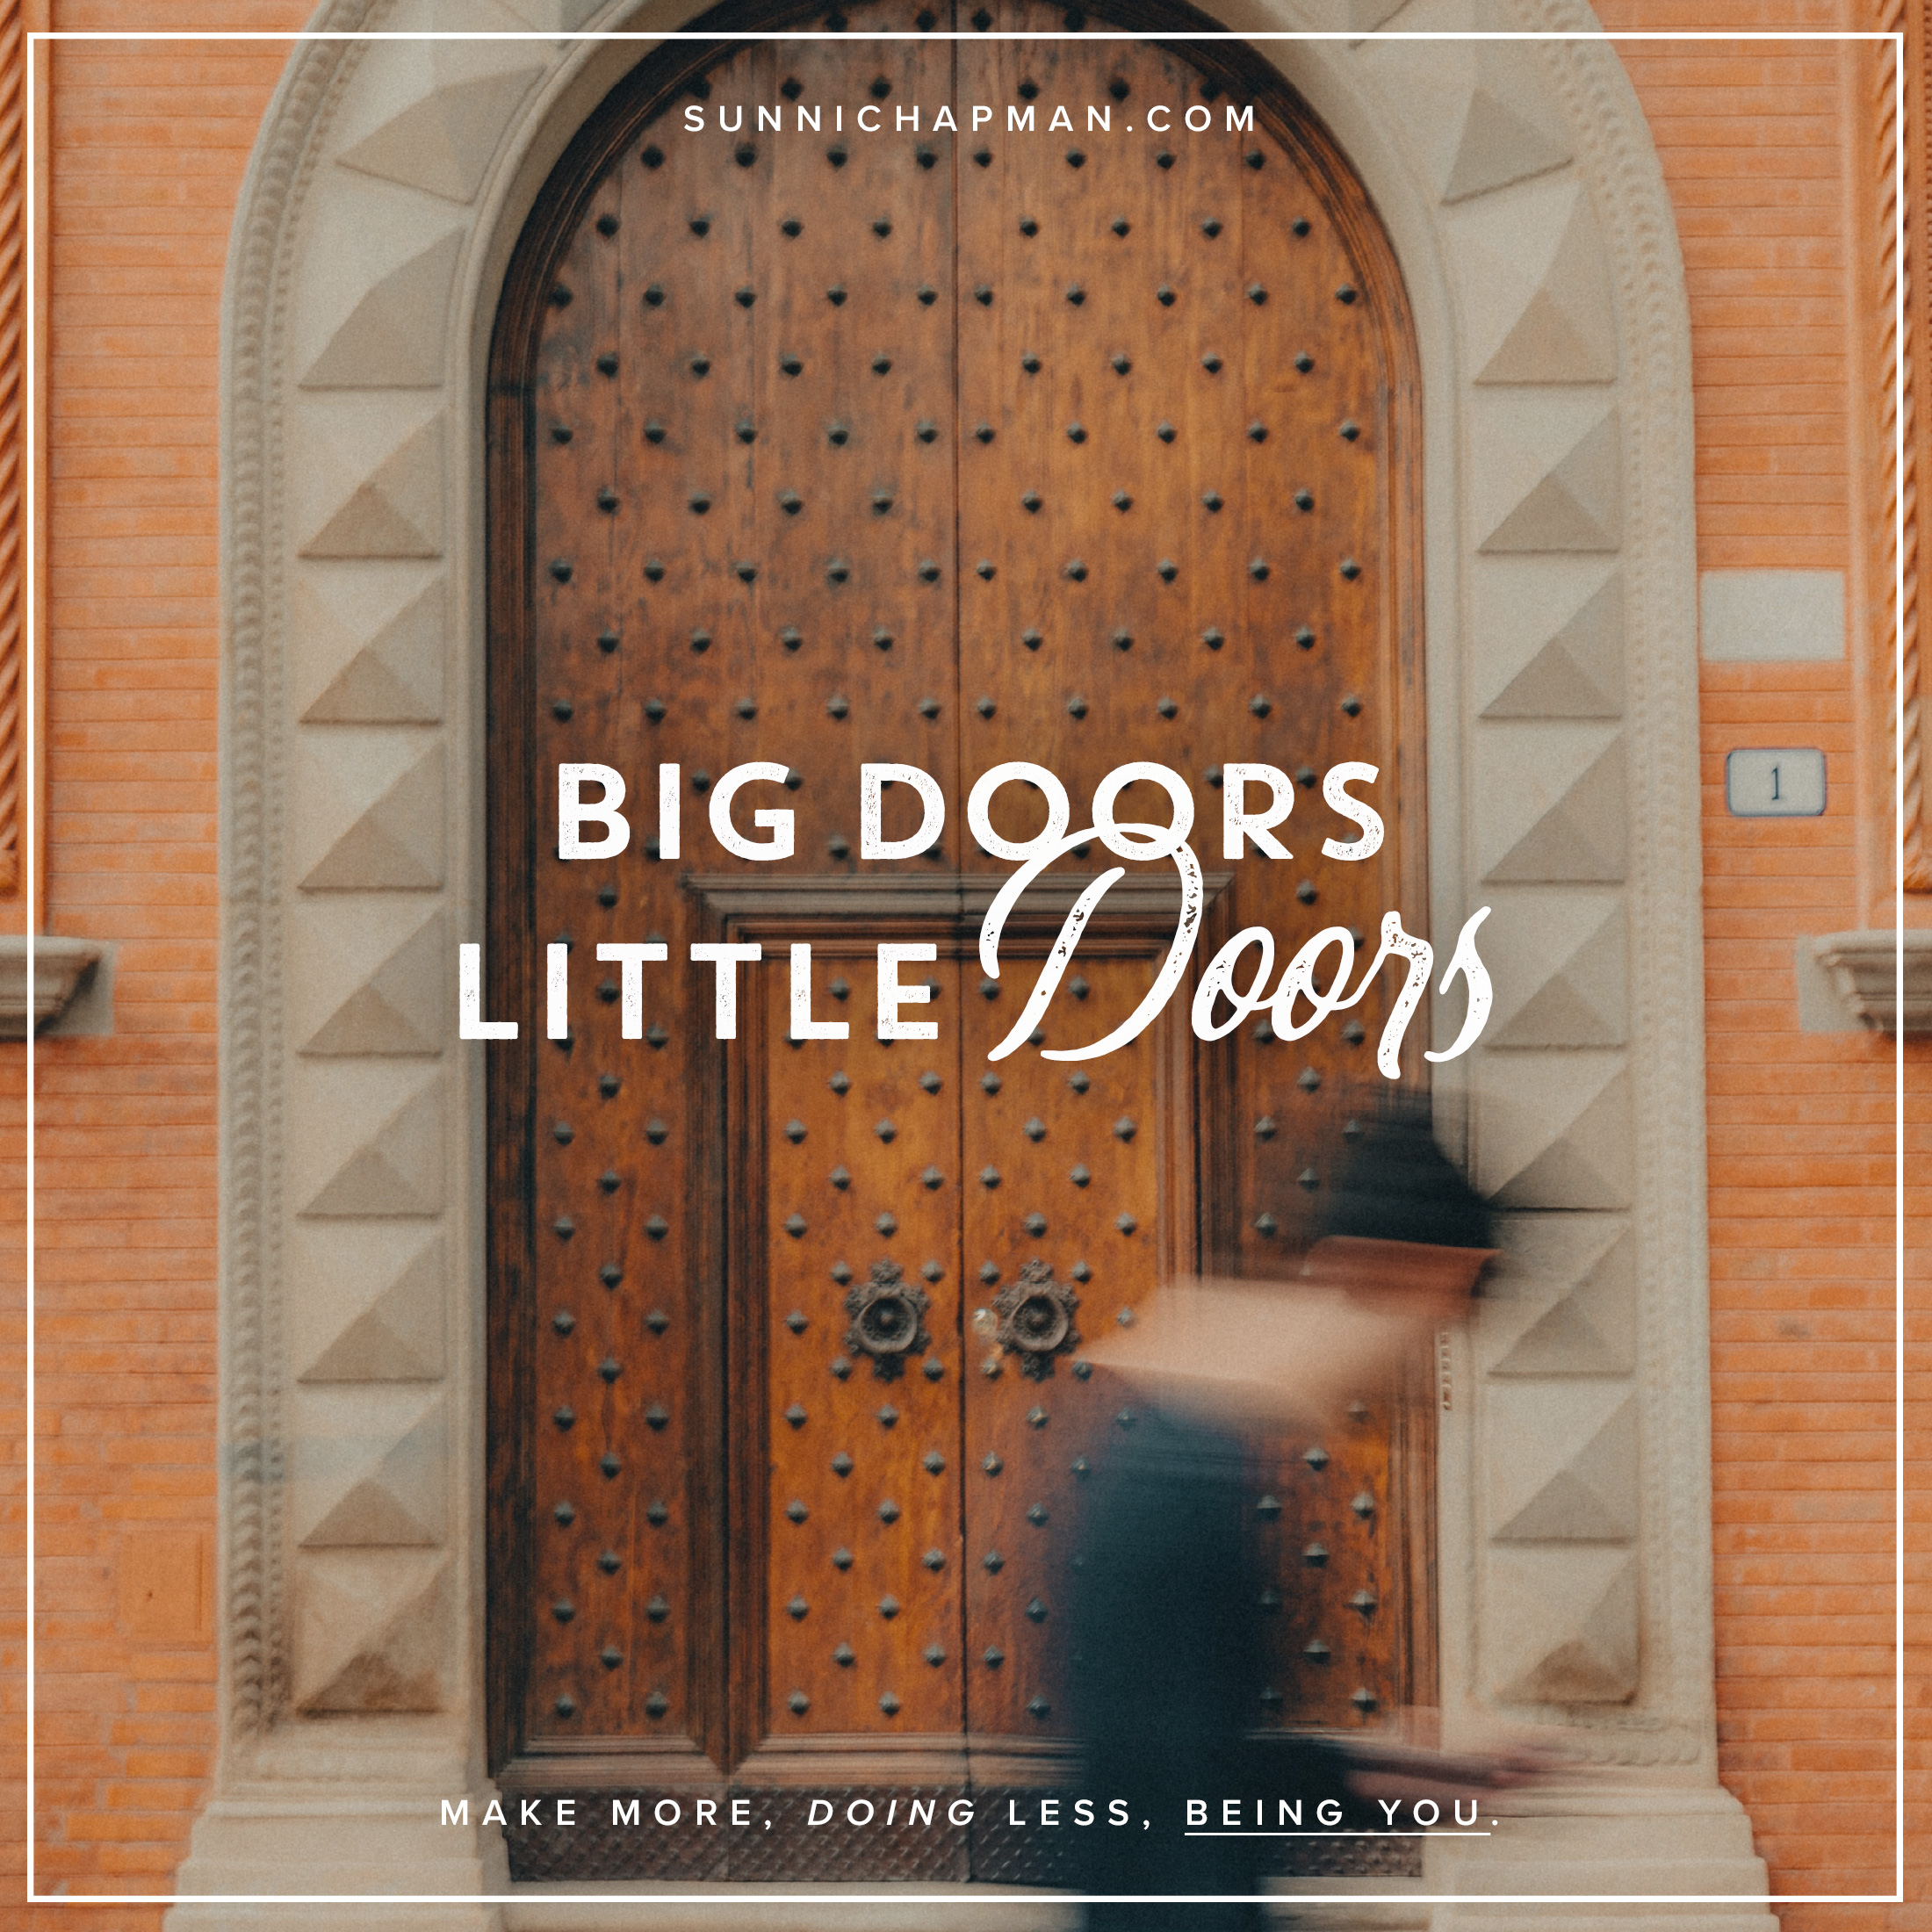 Beautiful, old, brown doors with text: Big Doors Little Doors